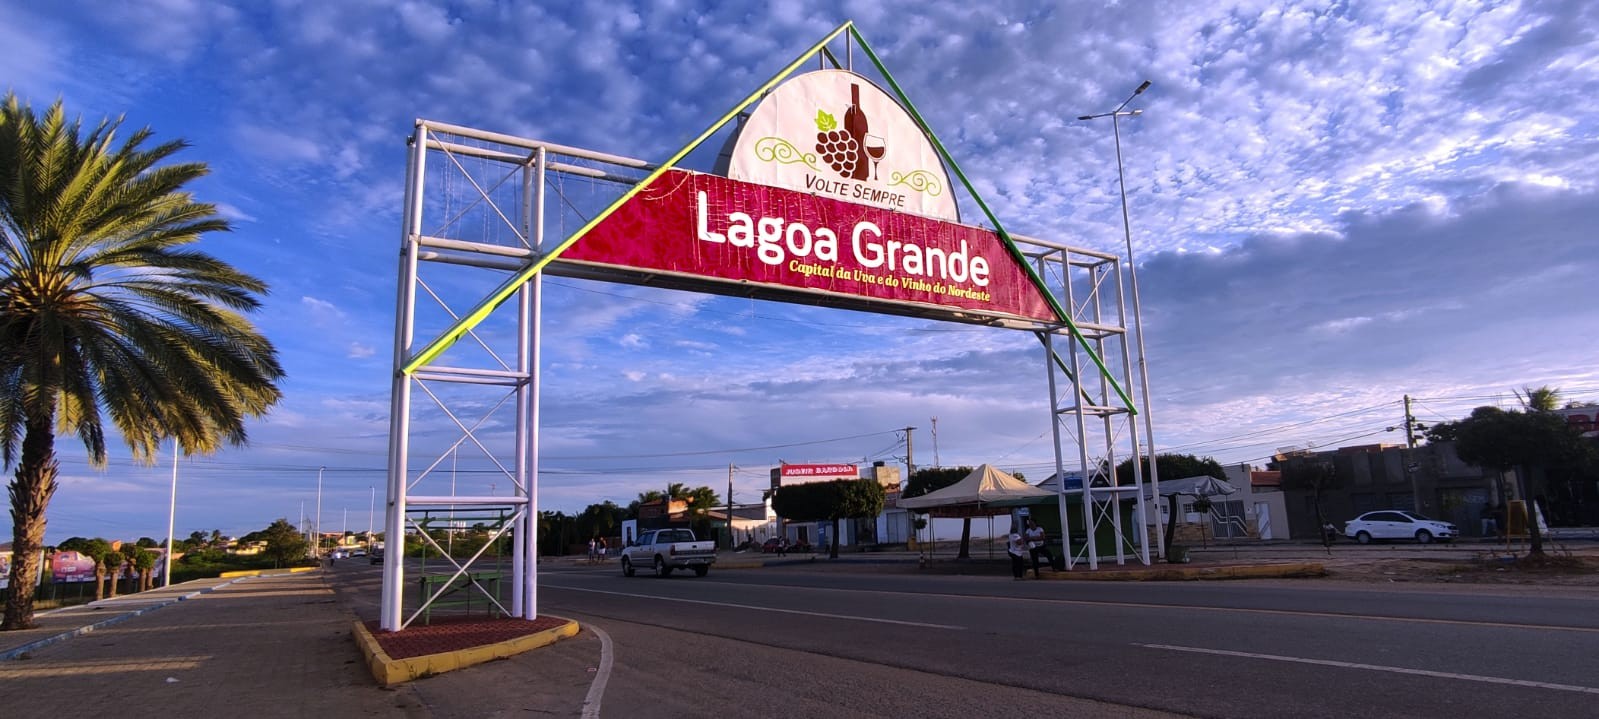 Banca organizadora diz que inscrições para o concurso da prefeitura de Lagoa Grande seguem abertas